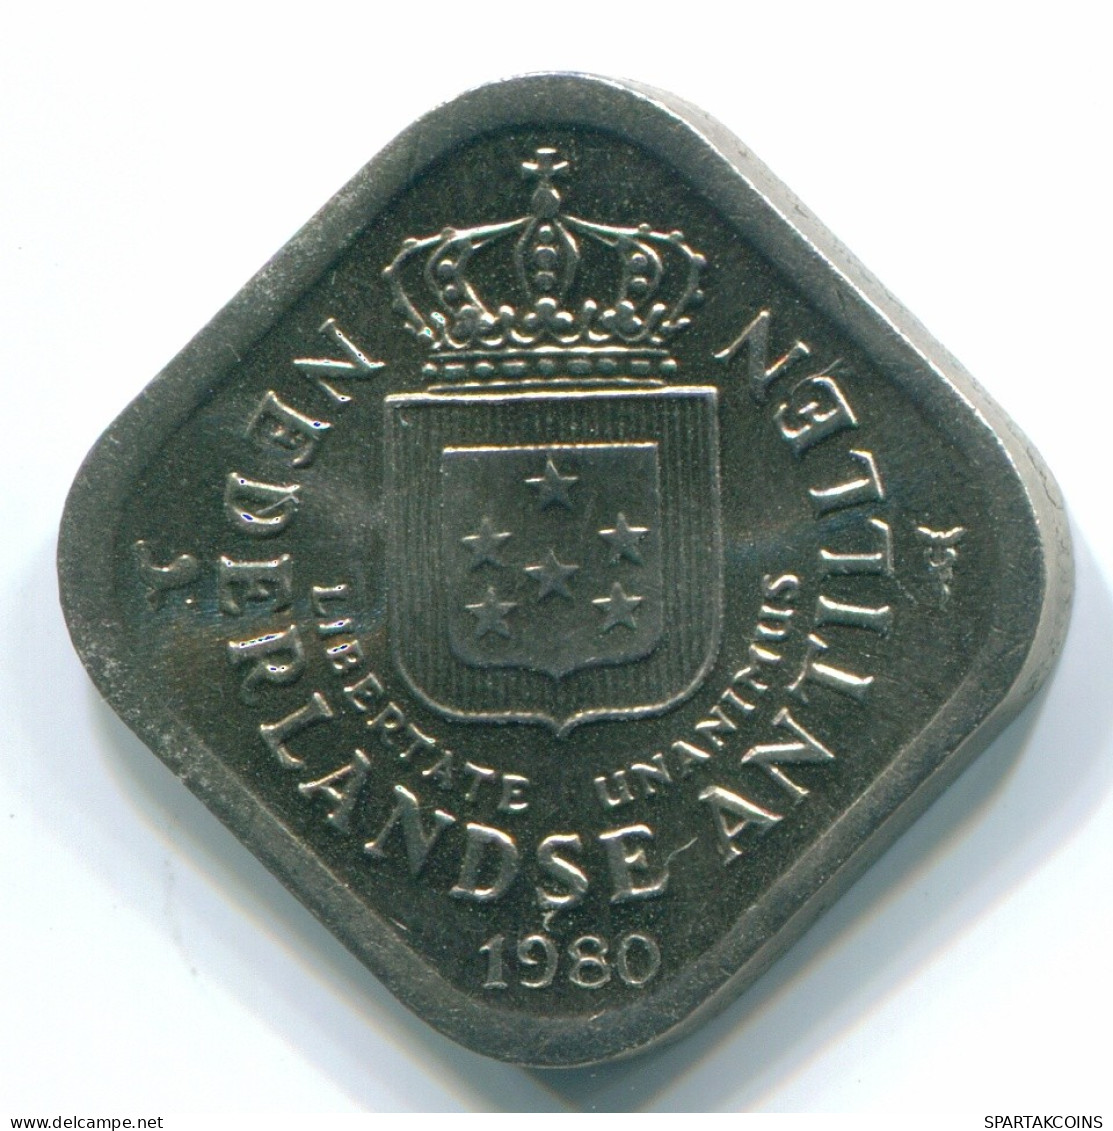 5 CENTS 1980 NIEDERLÄNDISCHE ANTILLEN Nickel Koloniale Münze #S12333.D.A - Niederländische Antillen